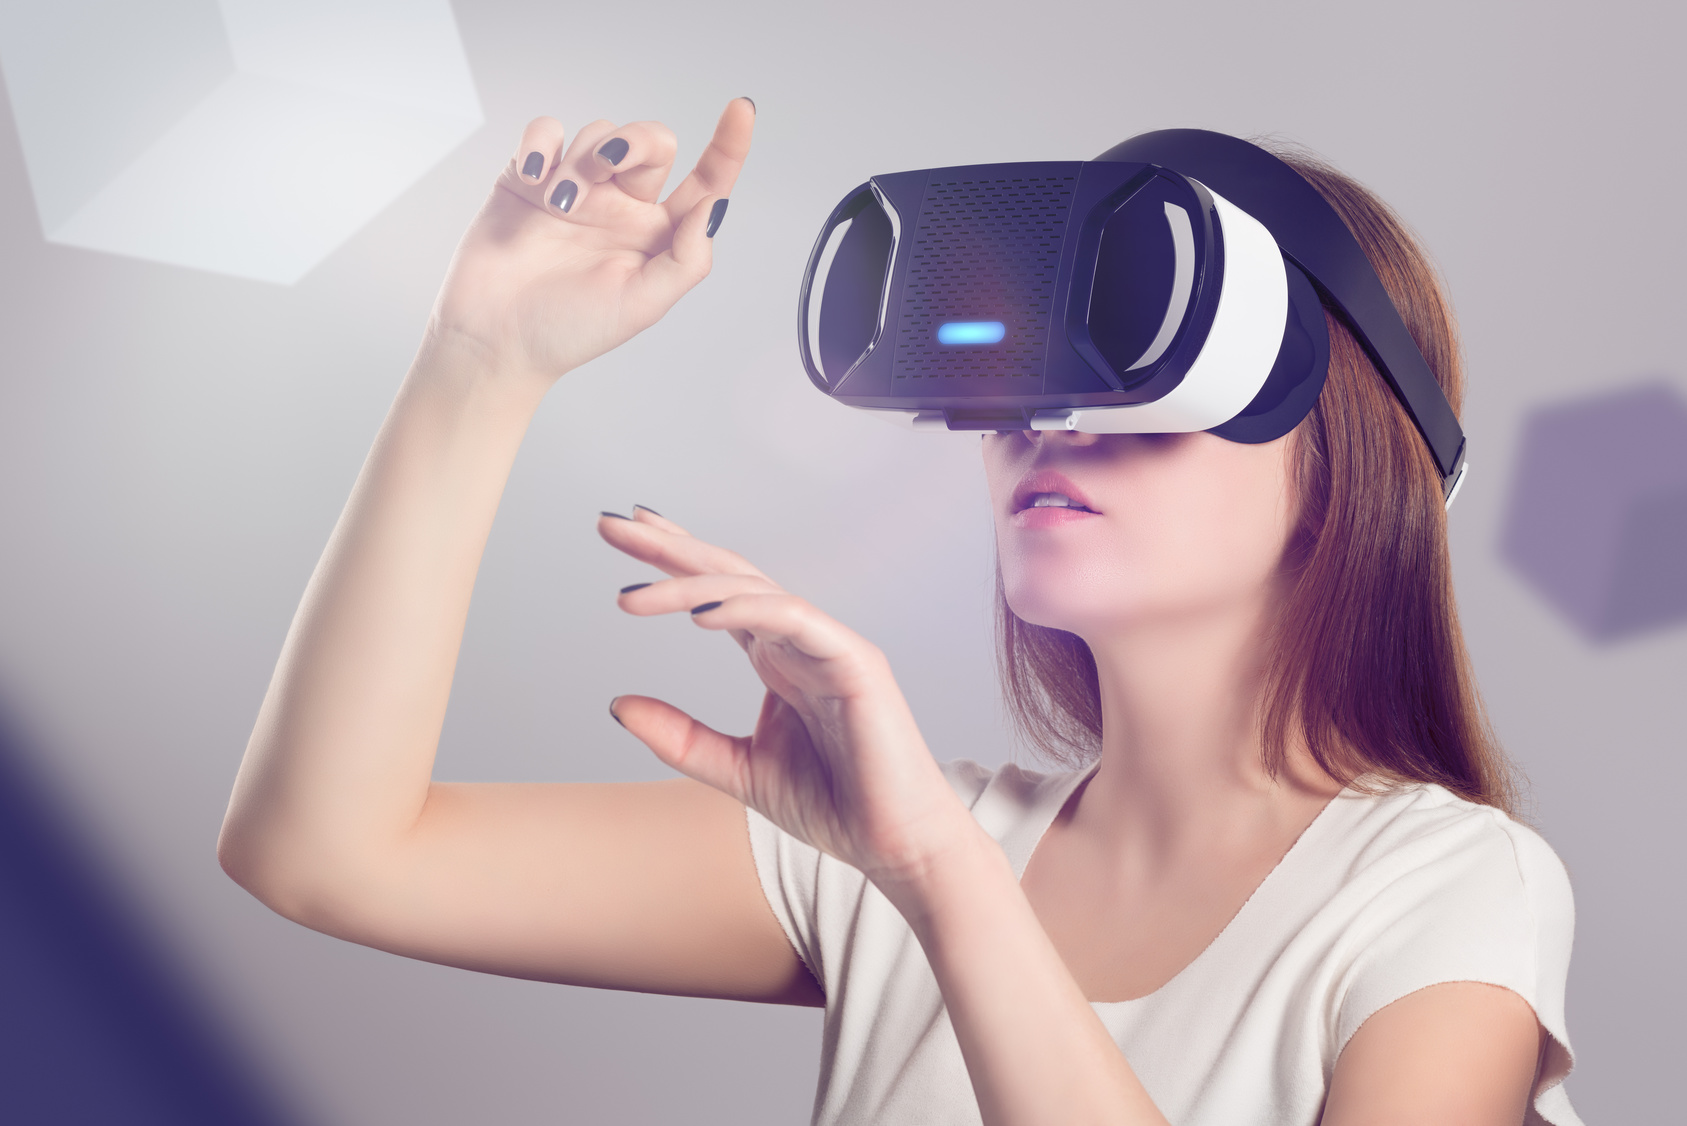 Selon les chercheurs, la sécurité intrinsèque des casques de réalité virtuelle laisse à désirer. © Alexey_boldin, Fotolia

